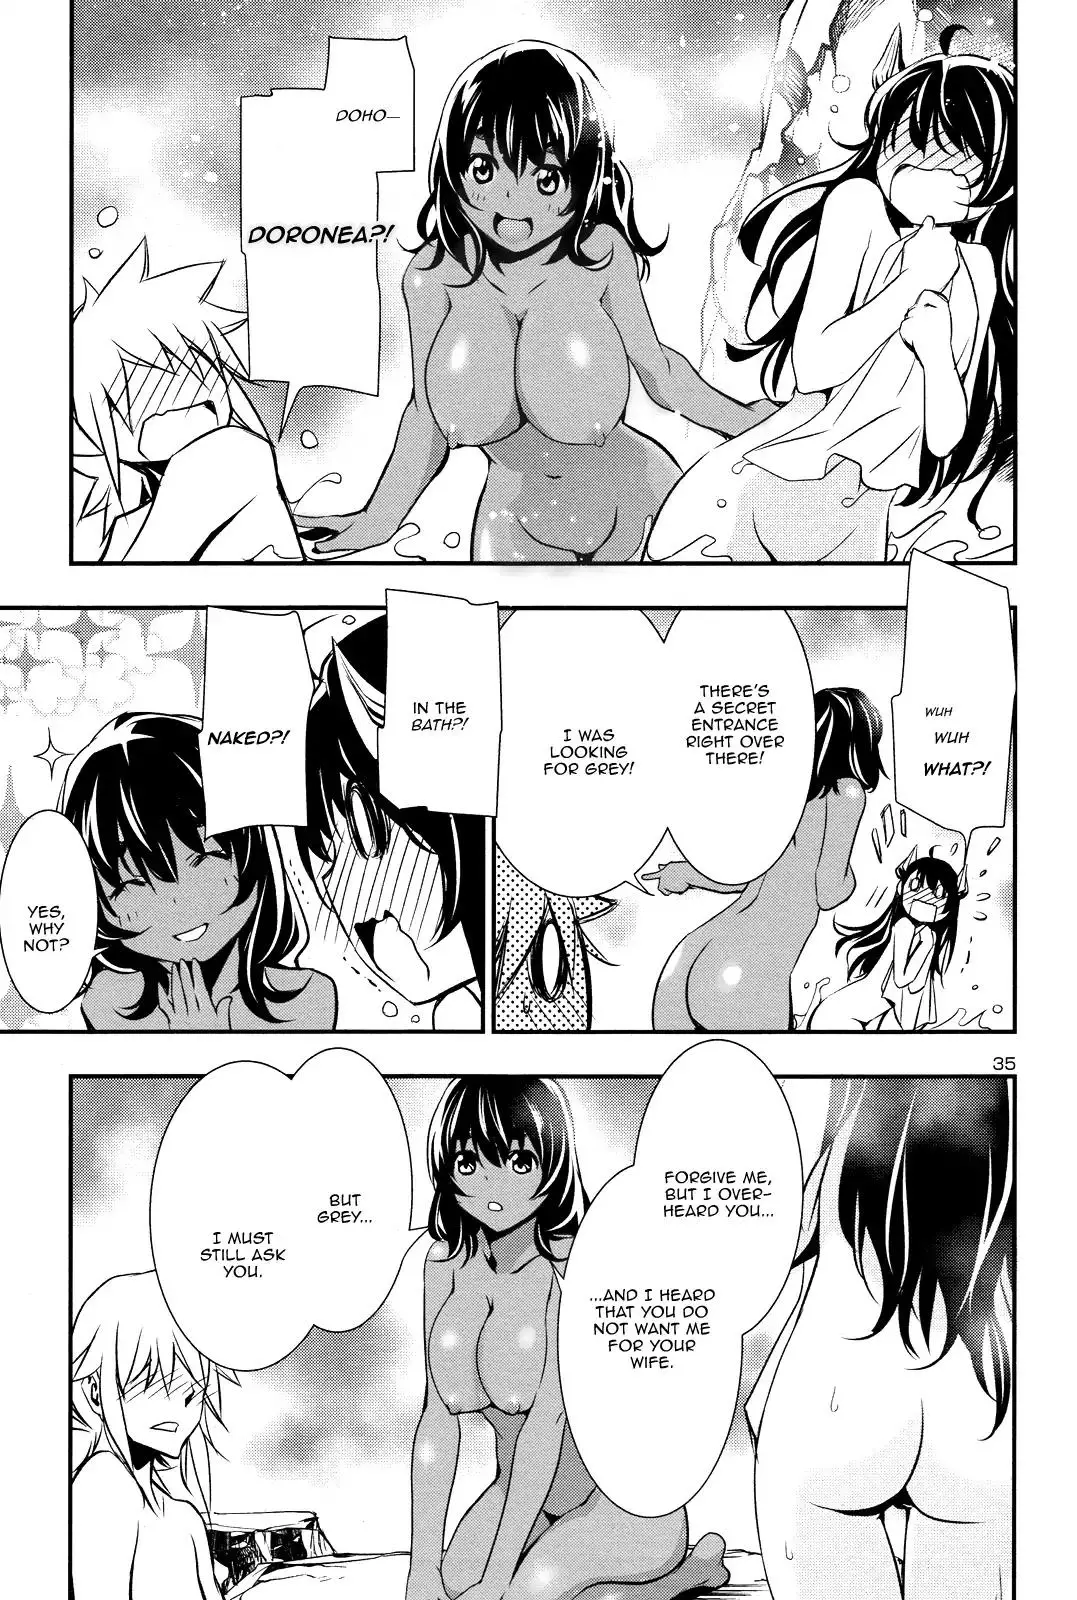 Shinju no Nectar - 13 page 33